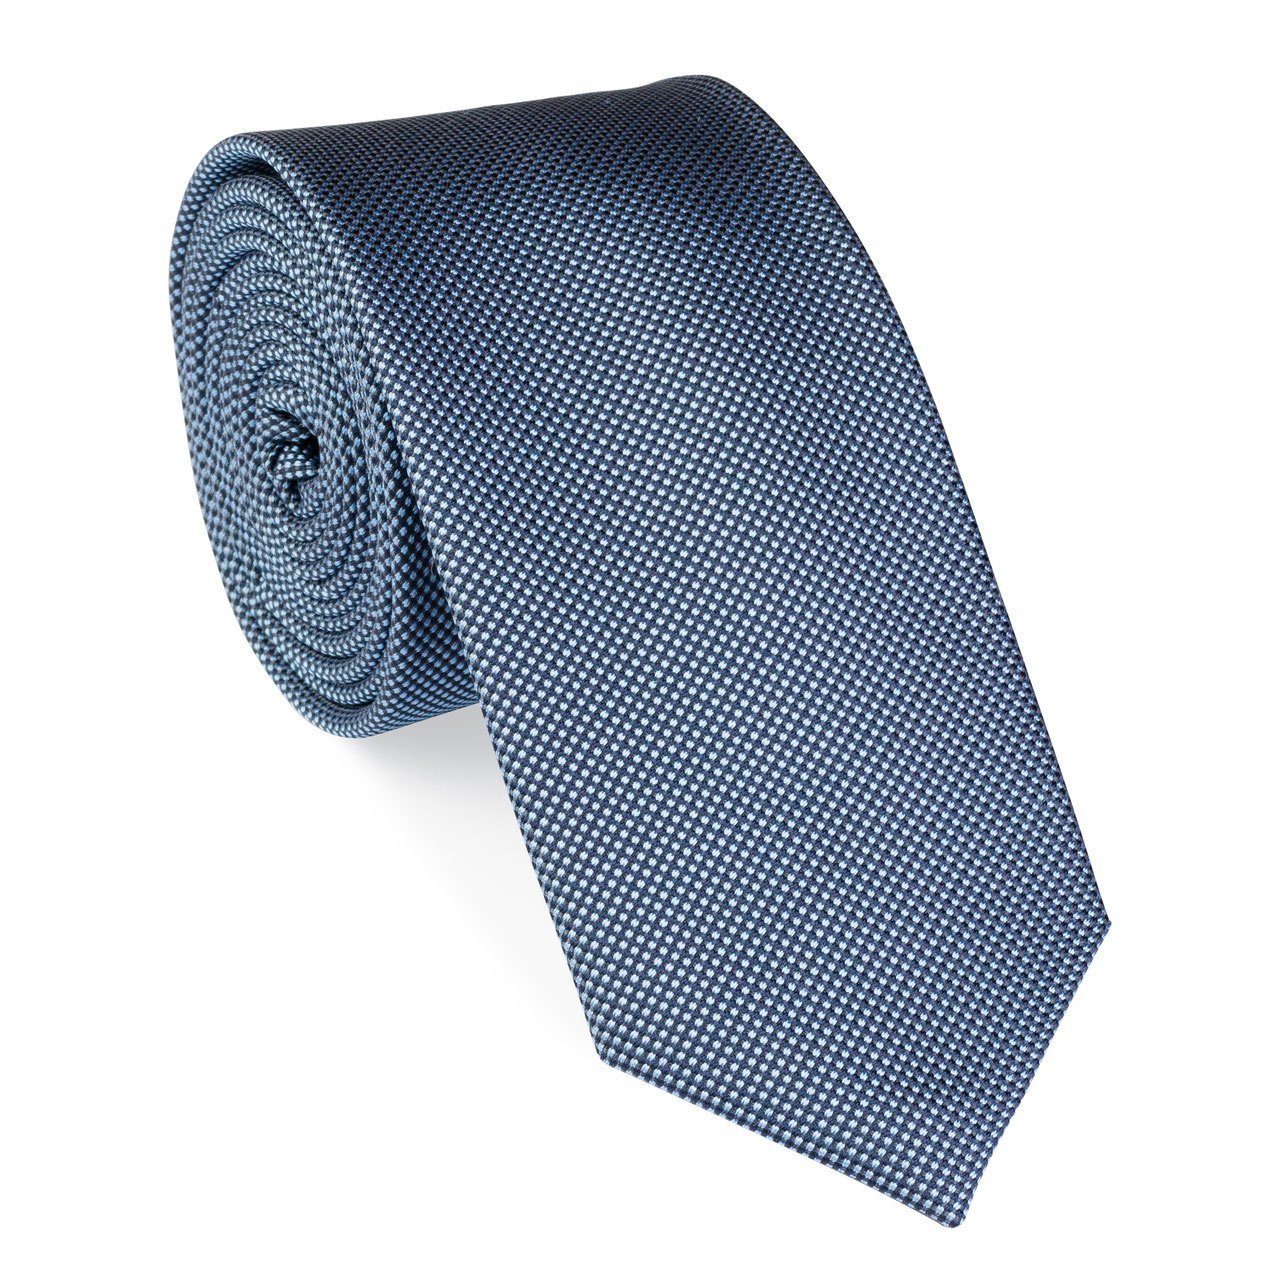 UNA Krawatte Krawatte - Perla - 6cm - Seide dunkelblau (17)